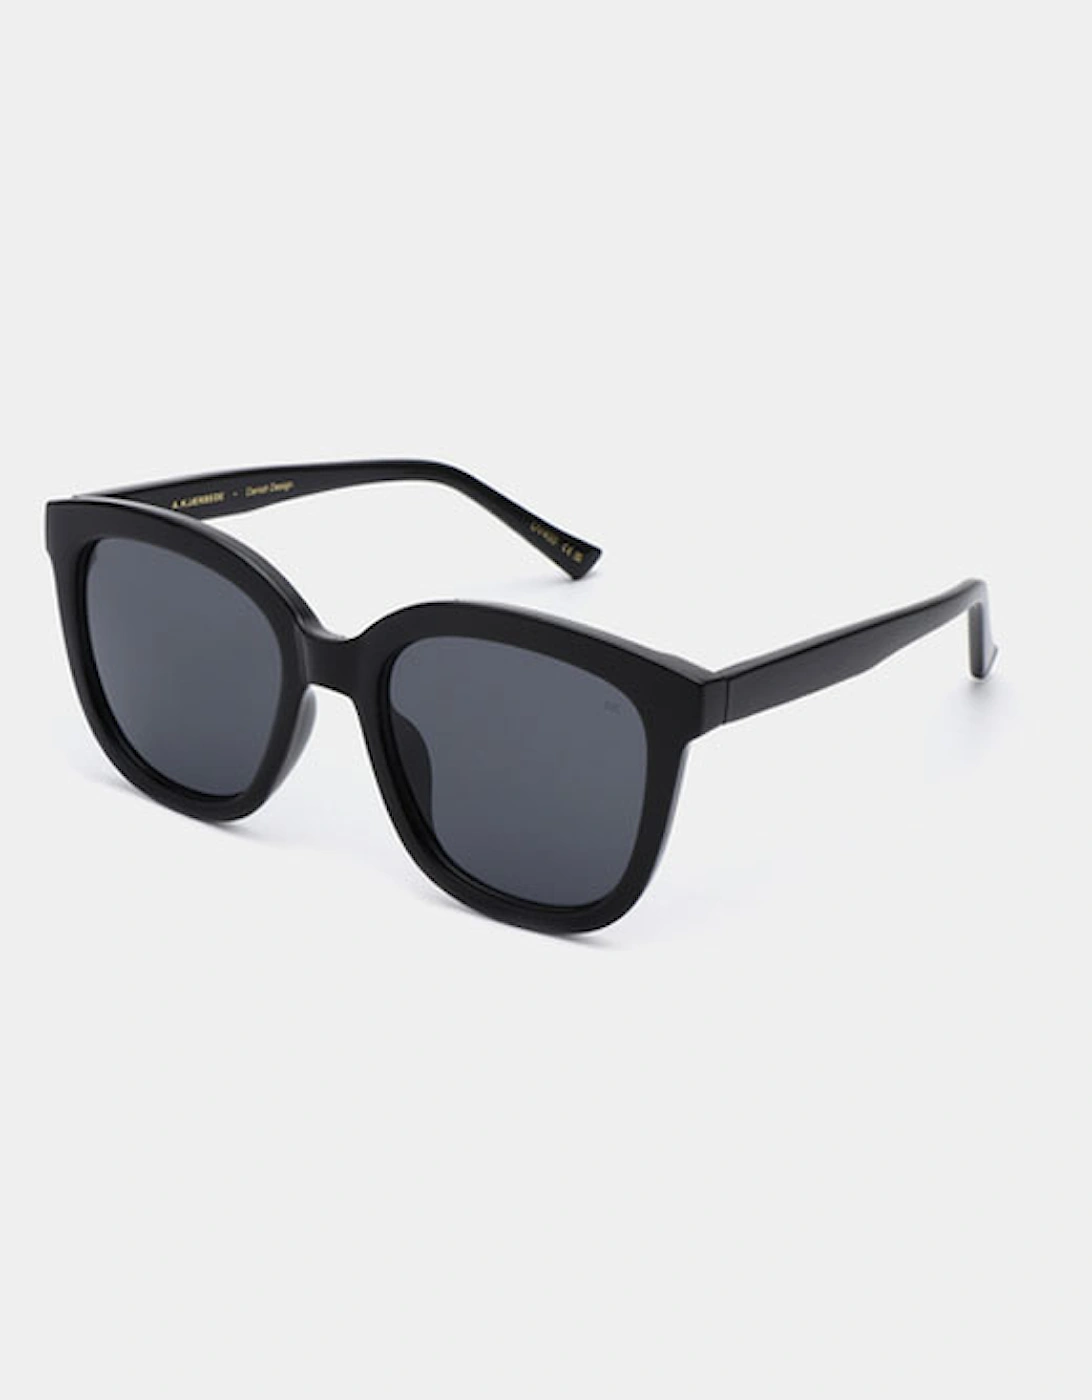 A Kjaerbede Billy Sunglasses Black, 6 of 5